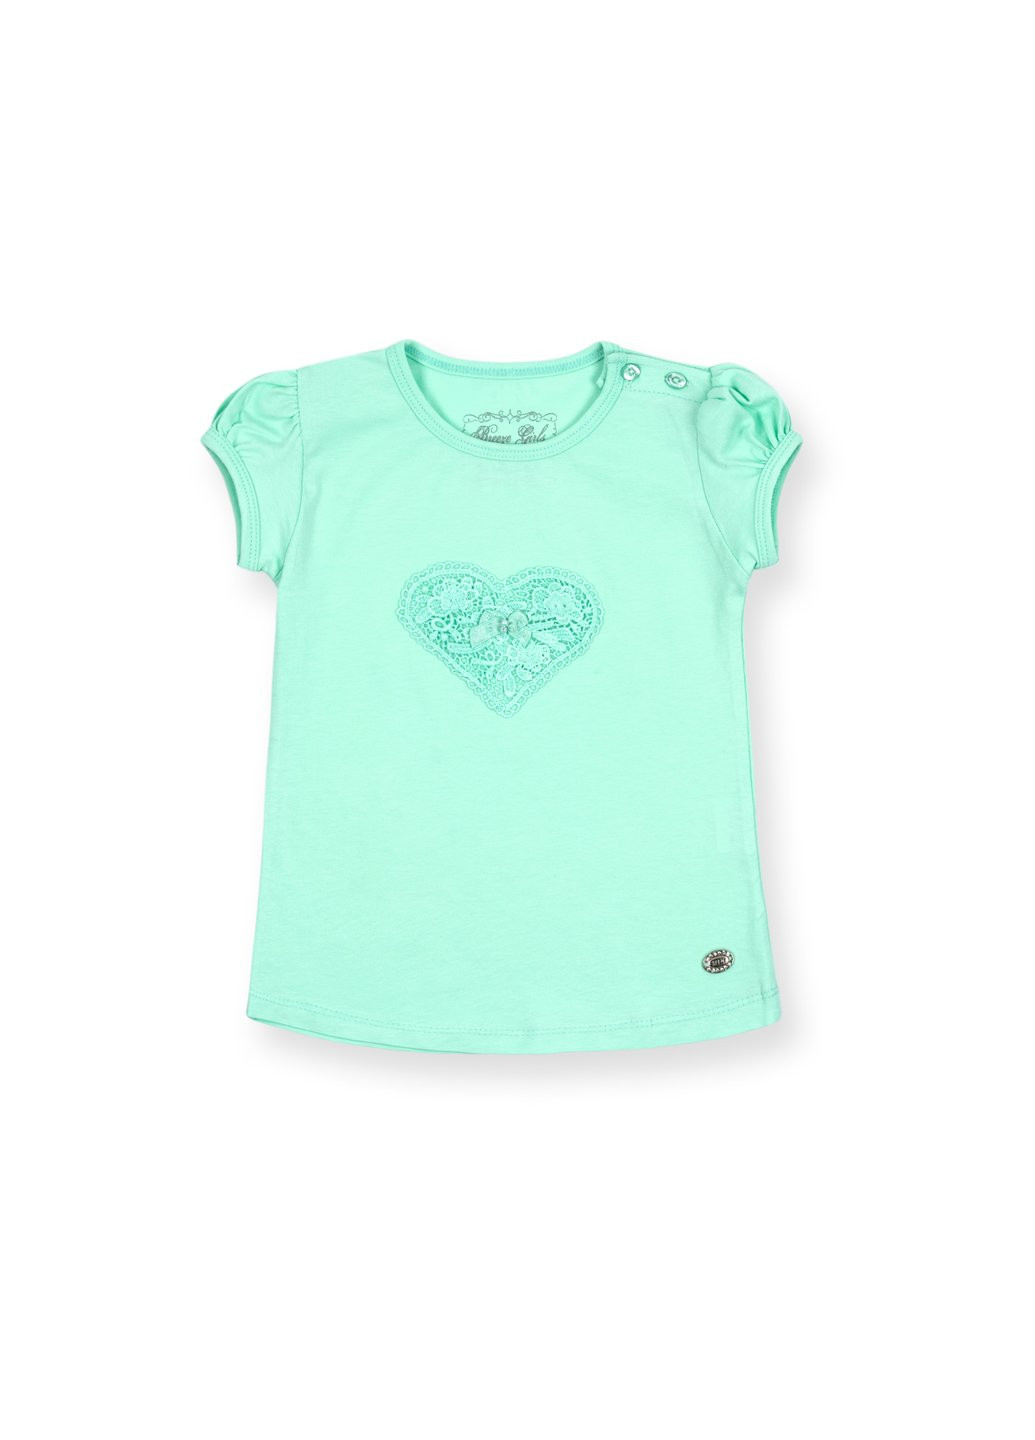 Комбинированная футболка детская с сердцем из кружев (7444-74g-mint) Breeze